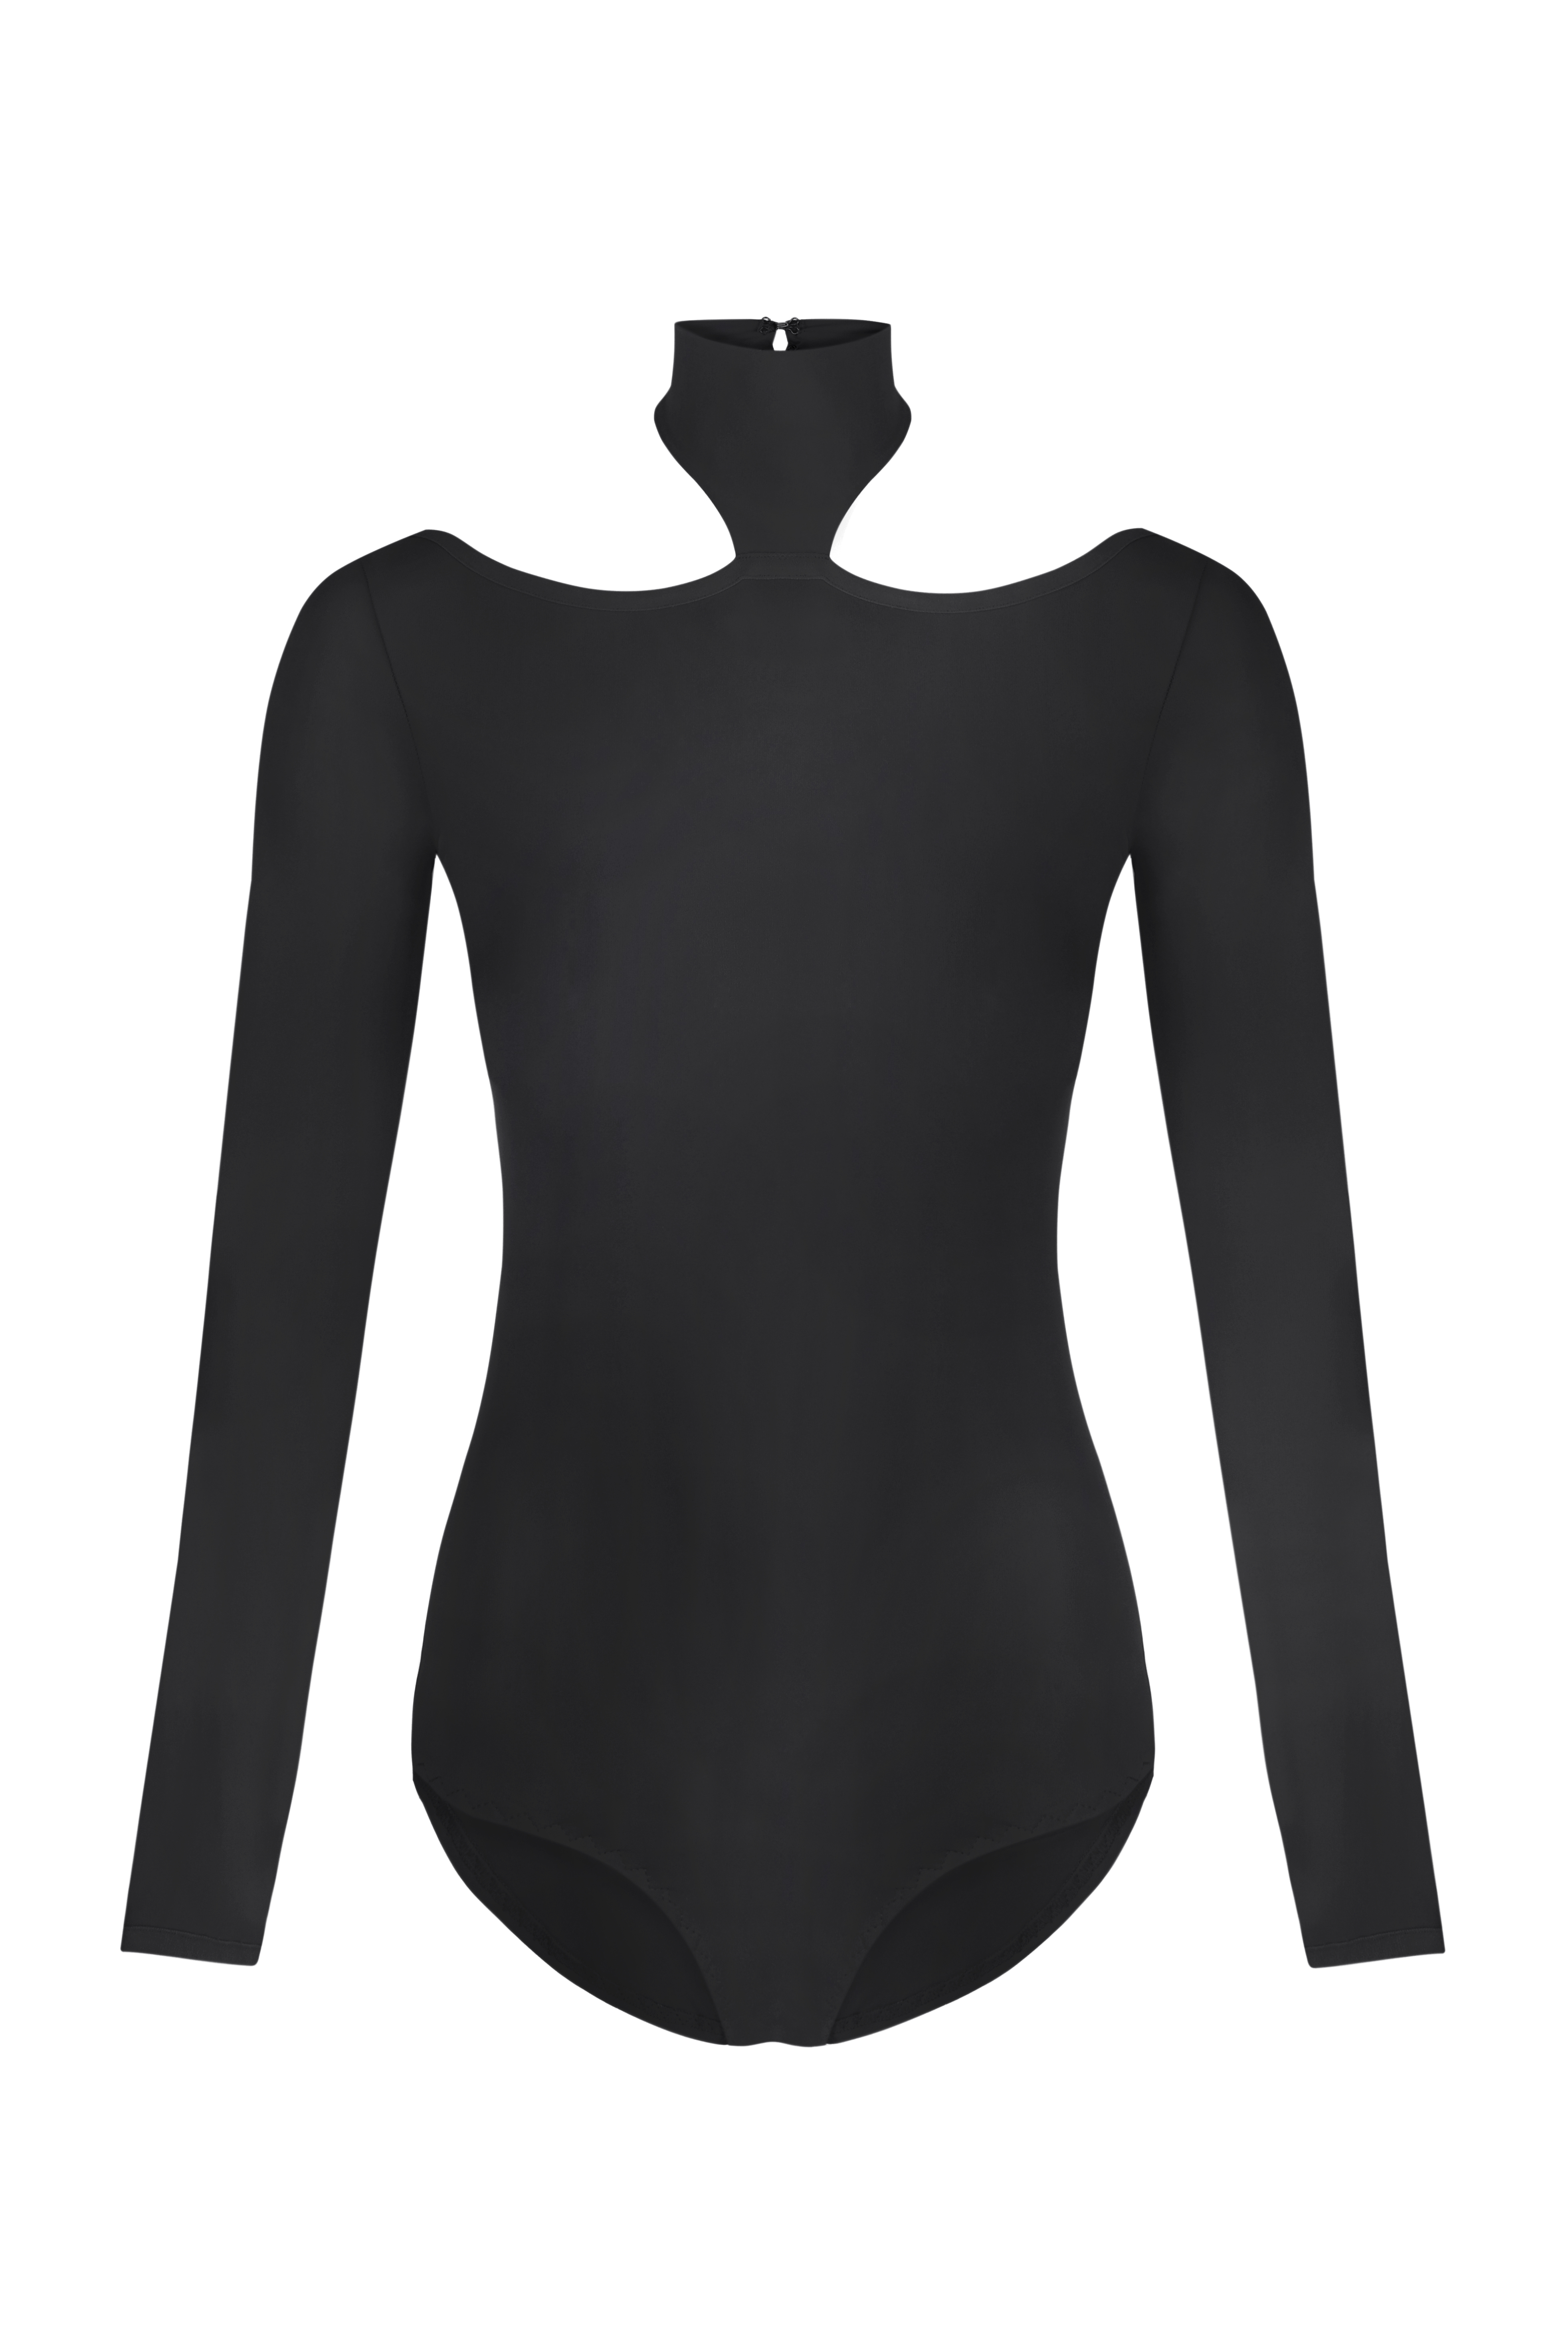 bodysuit Jazz black